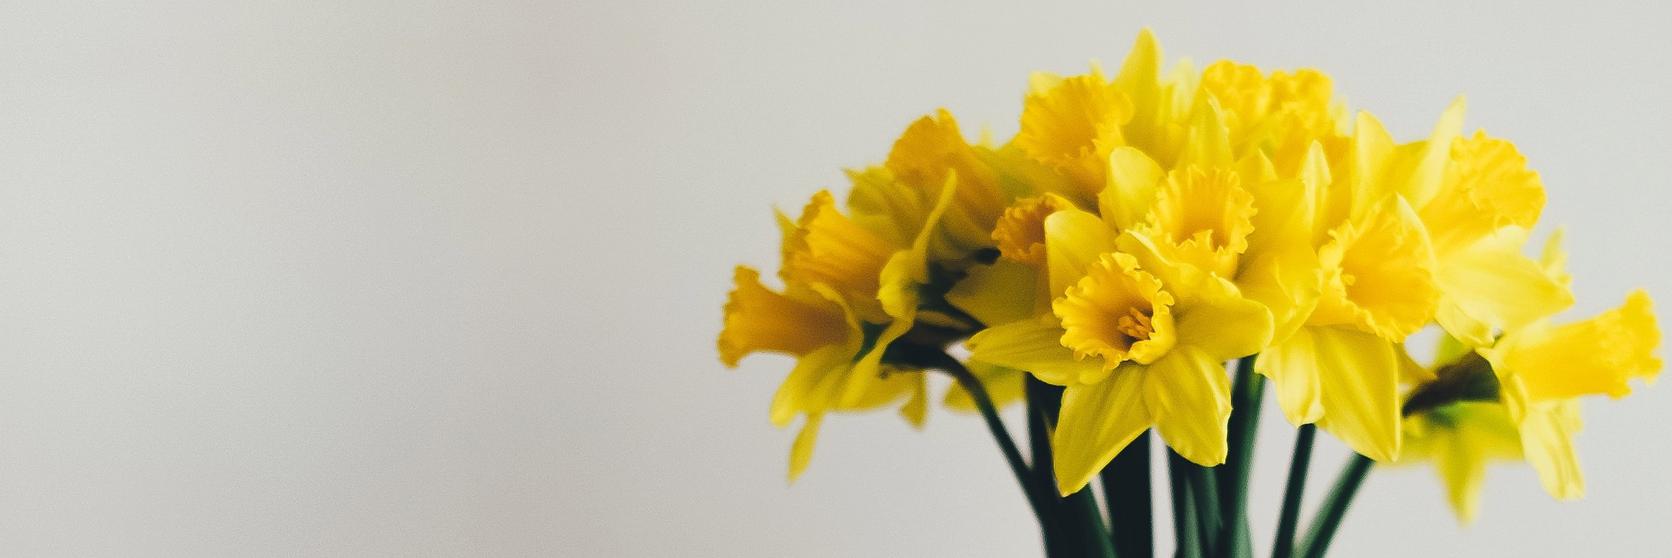 daffodil-spring-flowers